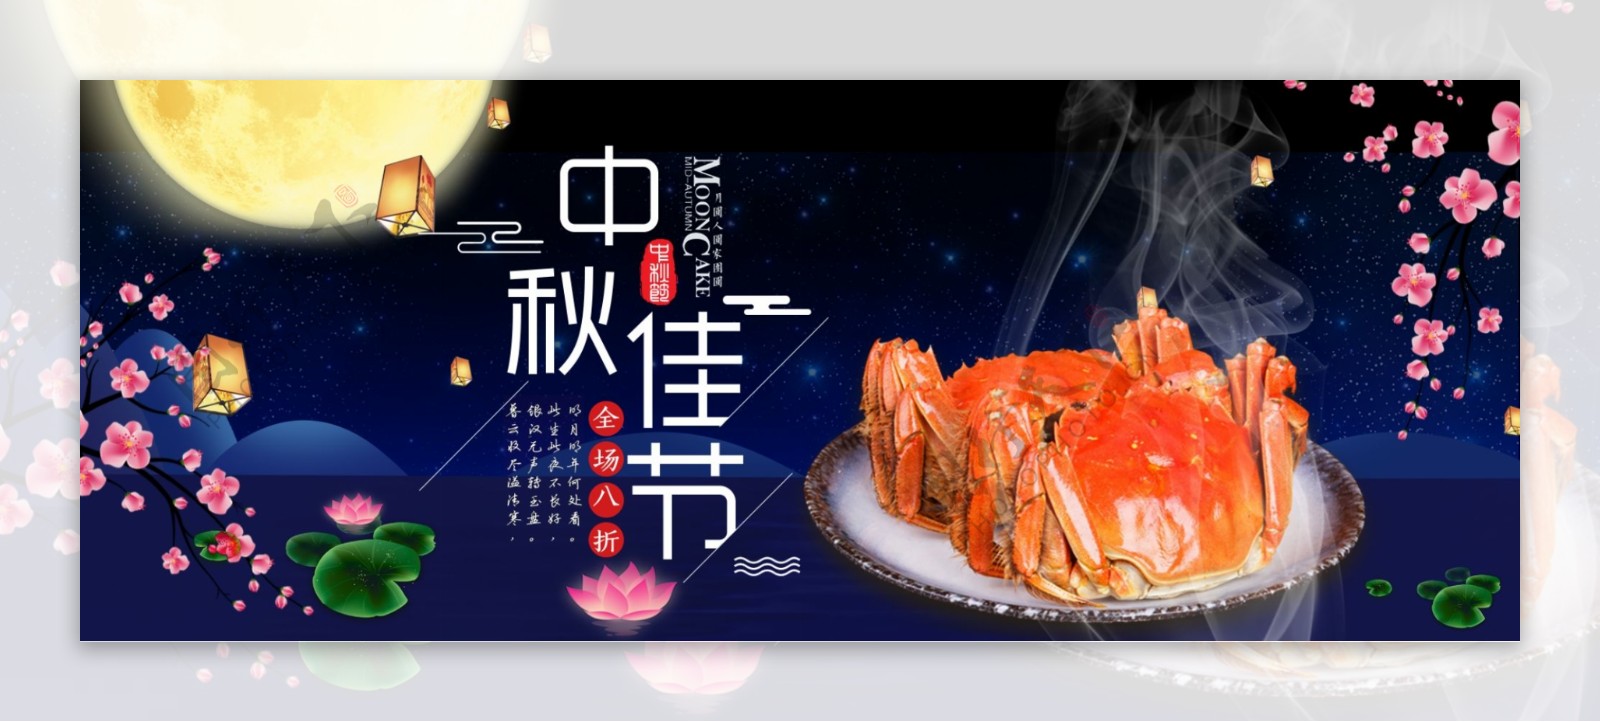 天猫淘宝中秋节大闸蟹礼品海报模板